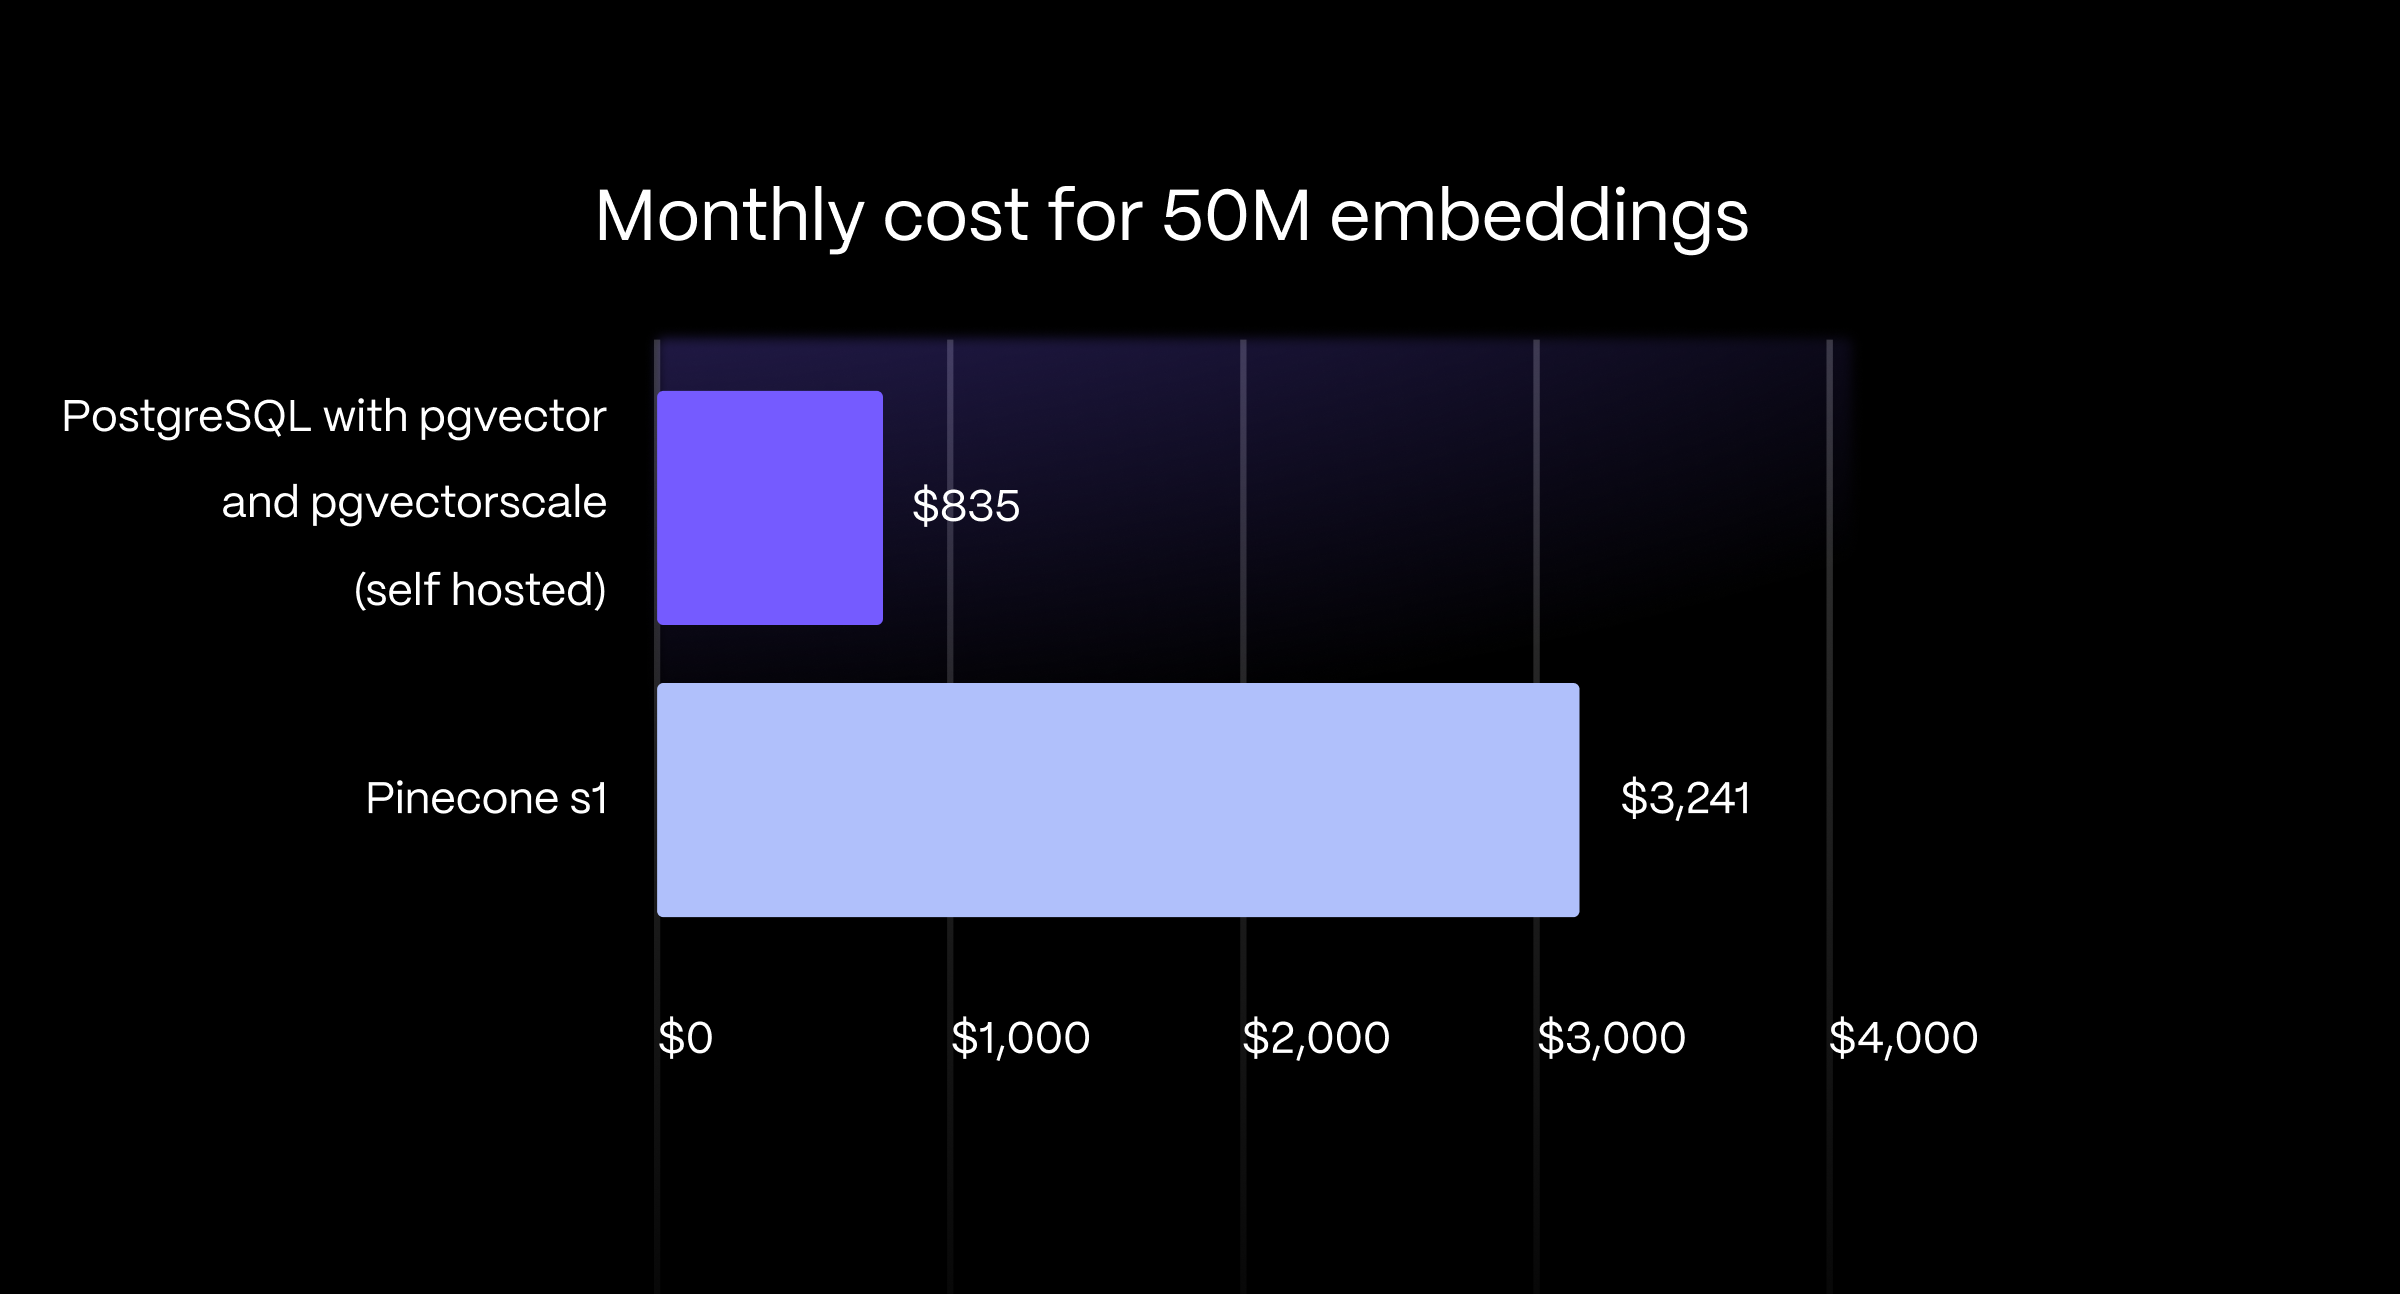 条形图显示 PostgreSQL 的成本比 Pinecone s1 的成本低 75%（Pinecone 每月 3241 美元，而 AWS EC2 上自托管每月 835 美元）